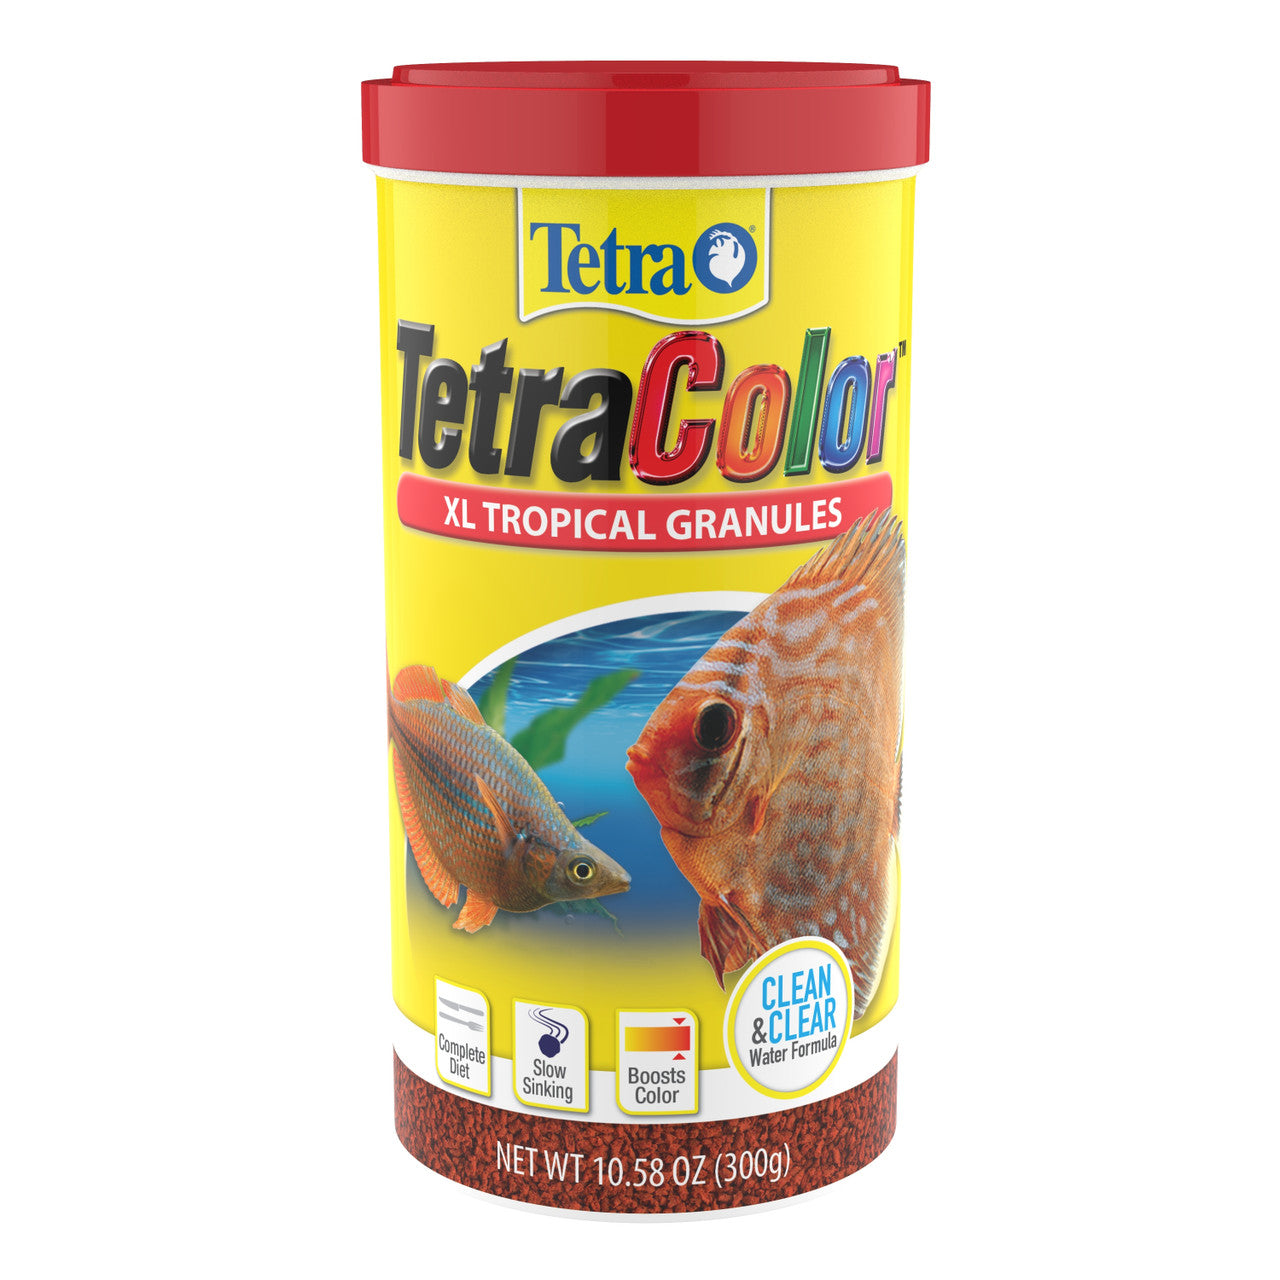 Tetra TetraColor Tropical Granules Fish Food 10.58 oz